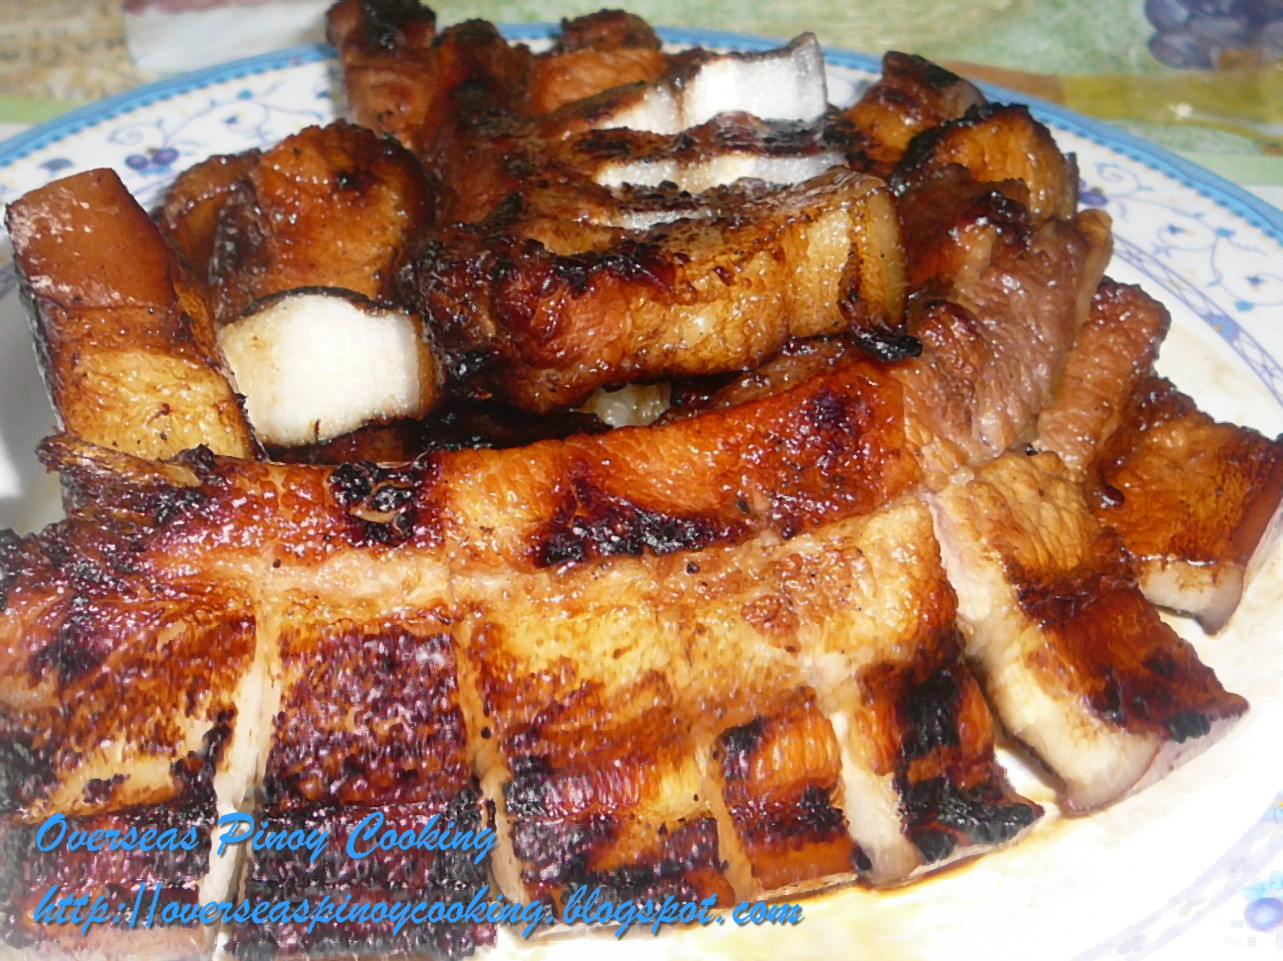 Grilled Pork Belly